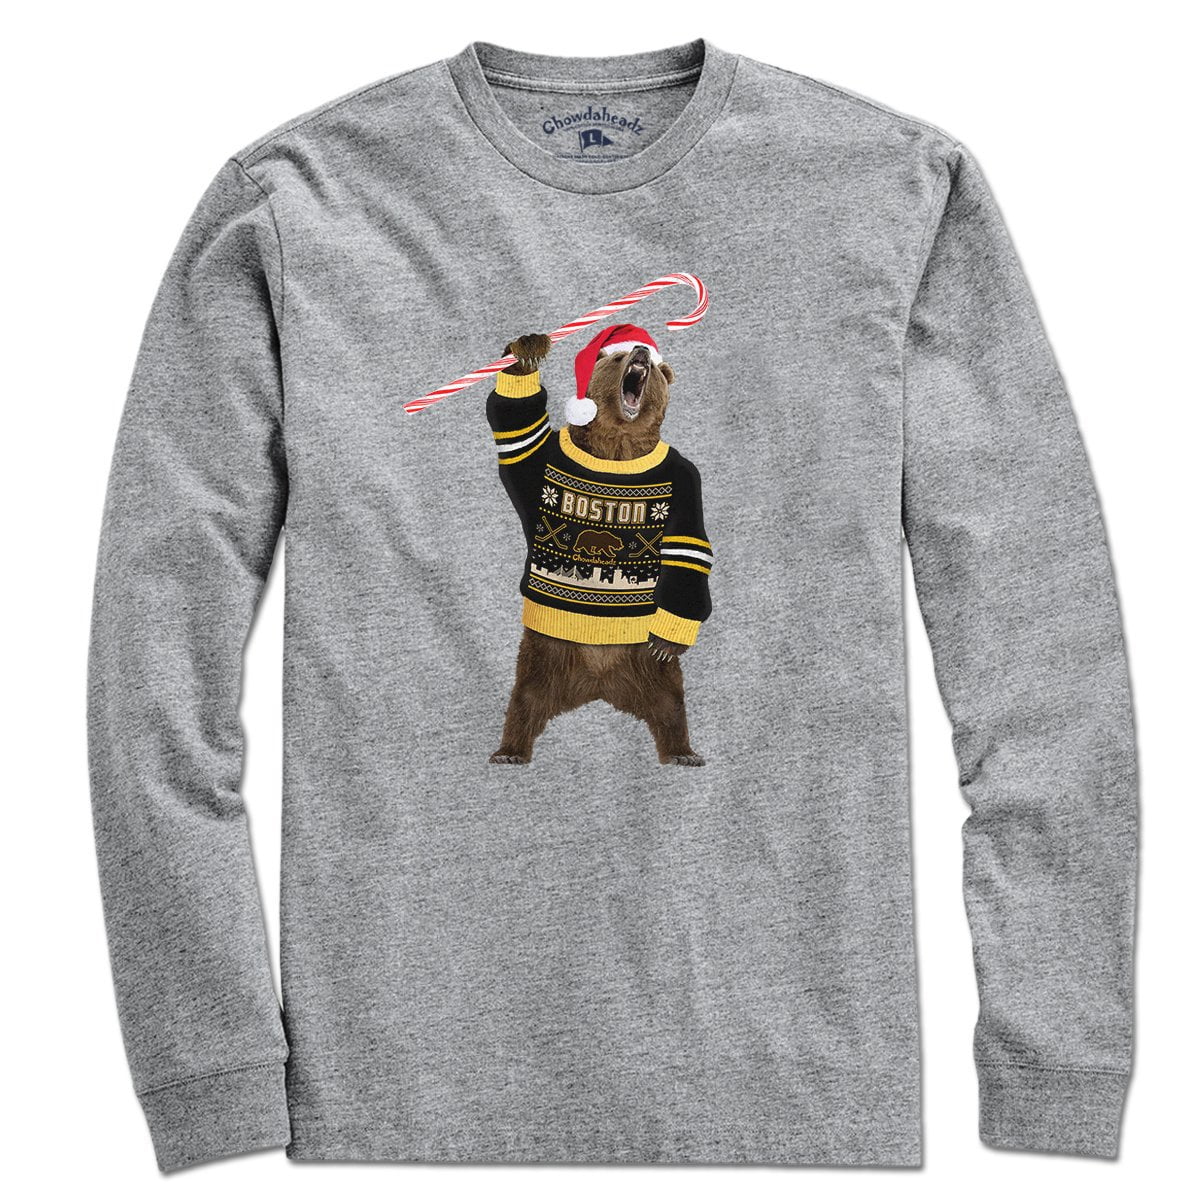 Boston Holiday Sweater Bear T-Shirt - Chowdaheadz